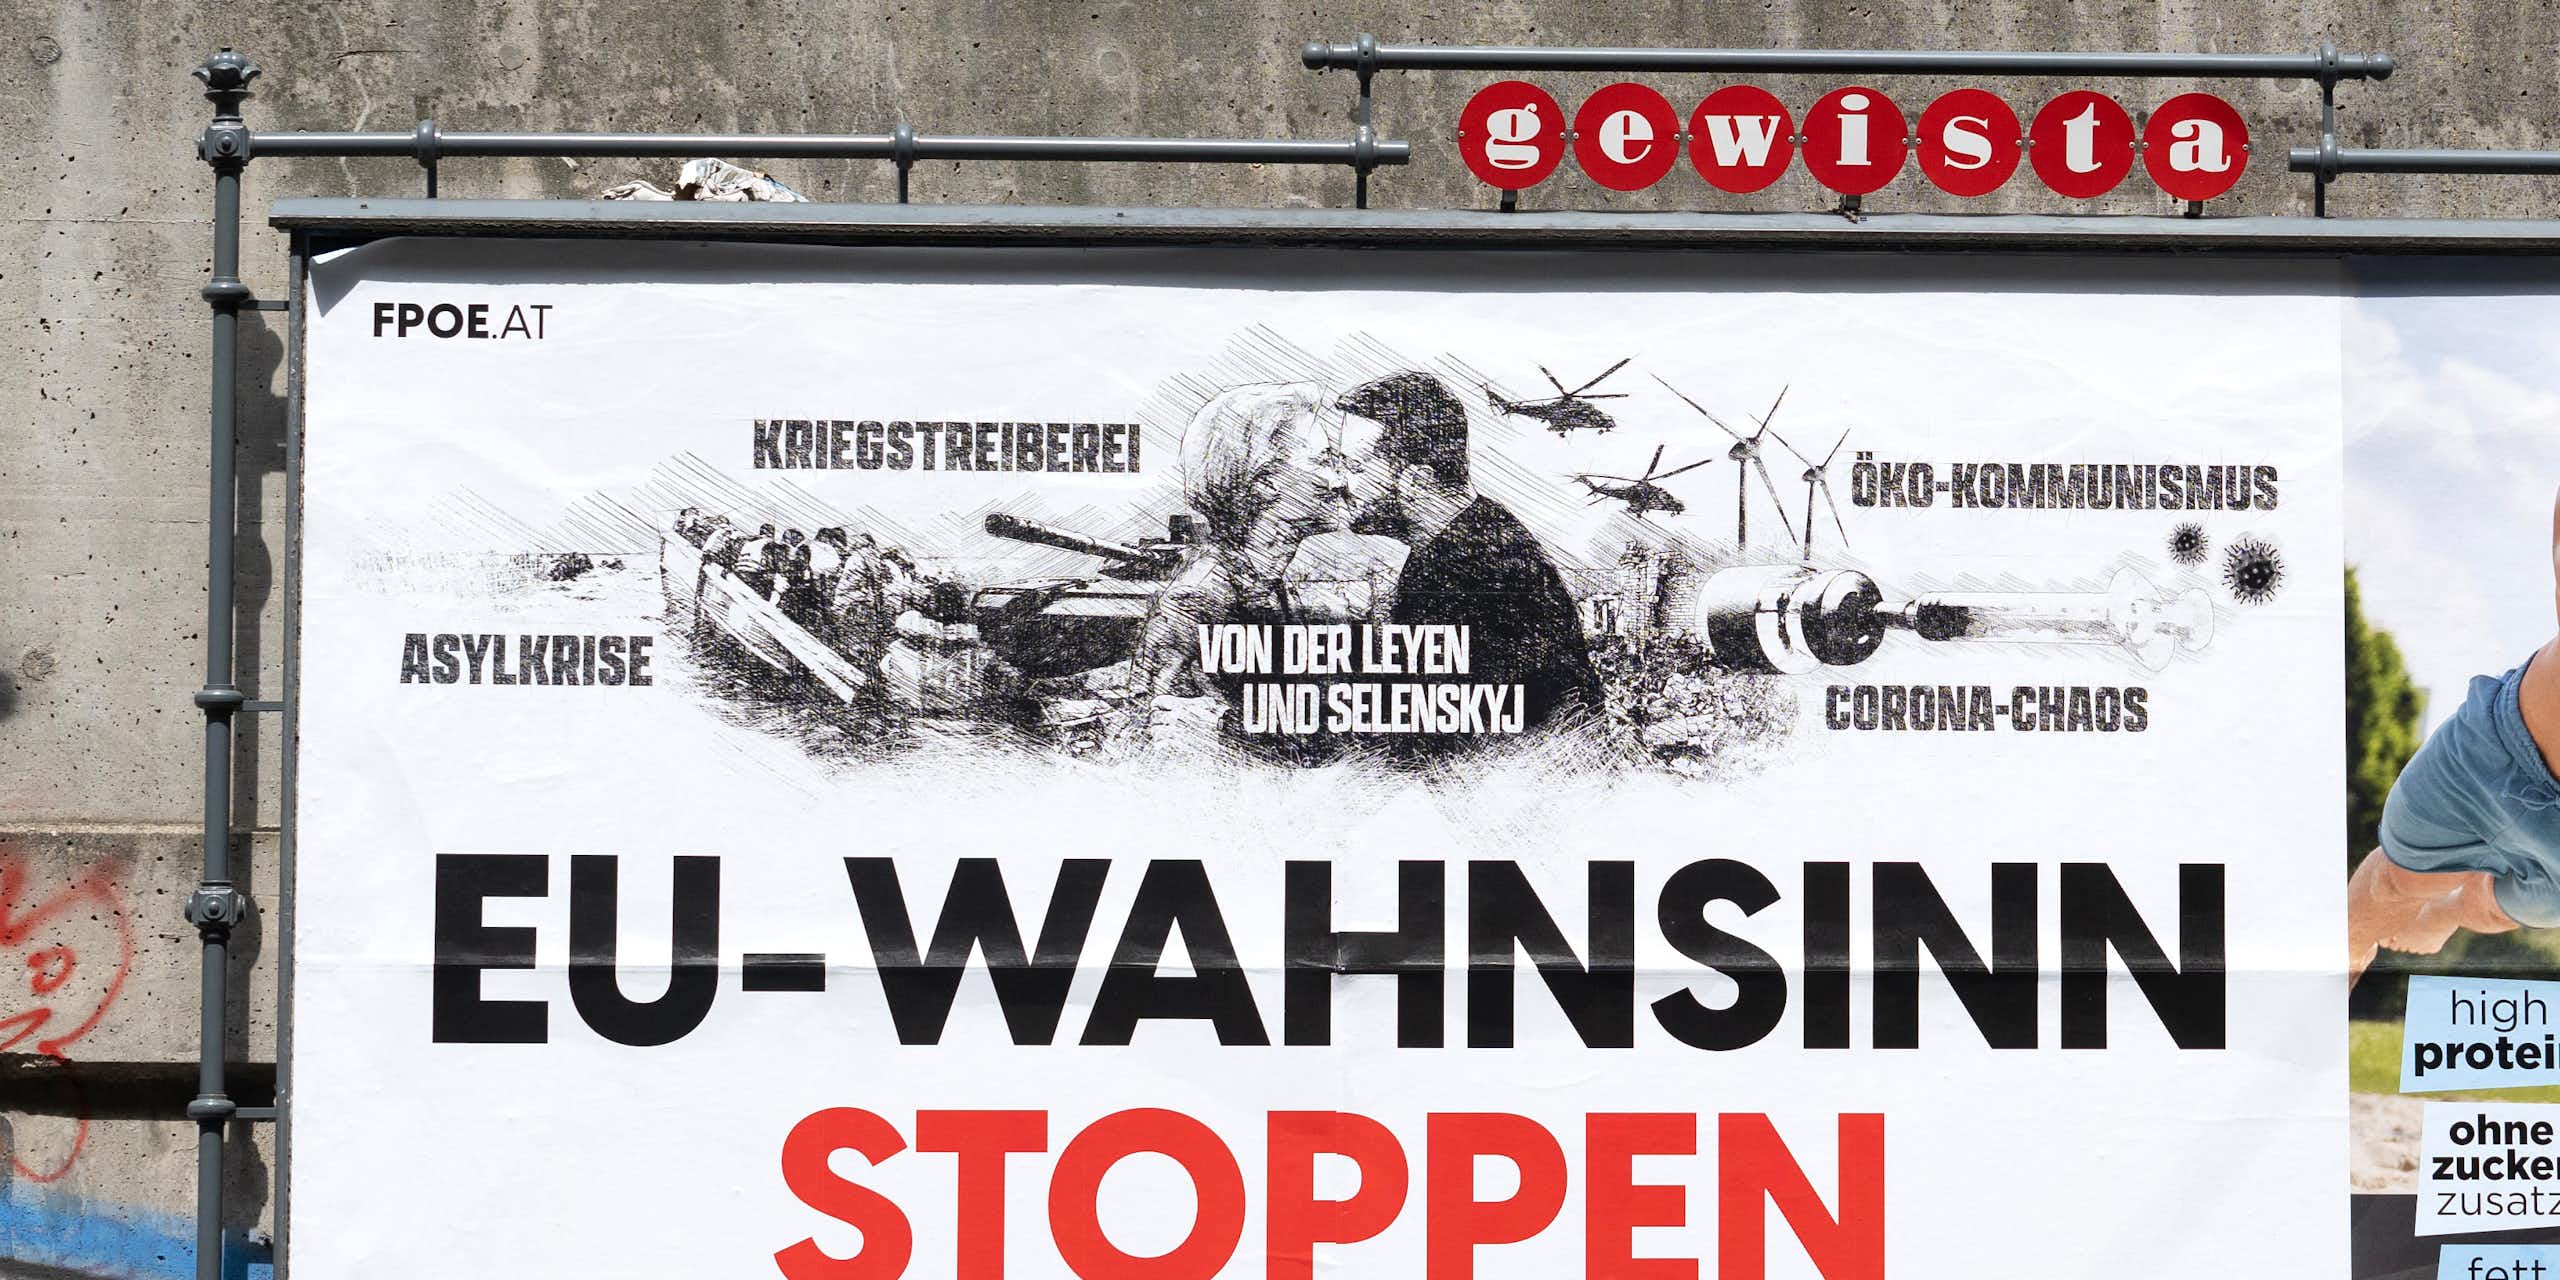 Un homme passe dans une rue de Vienne devant une affiche de campagne du FPÖ